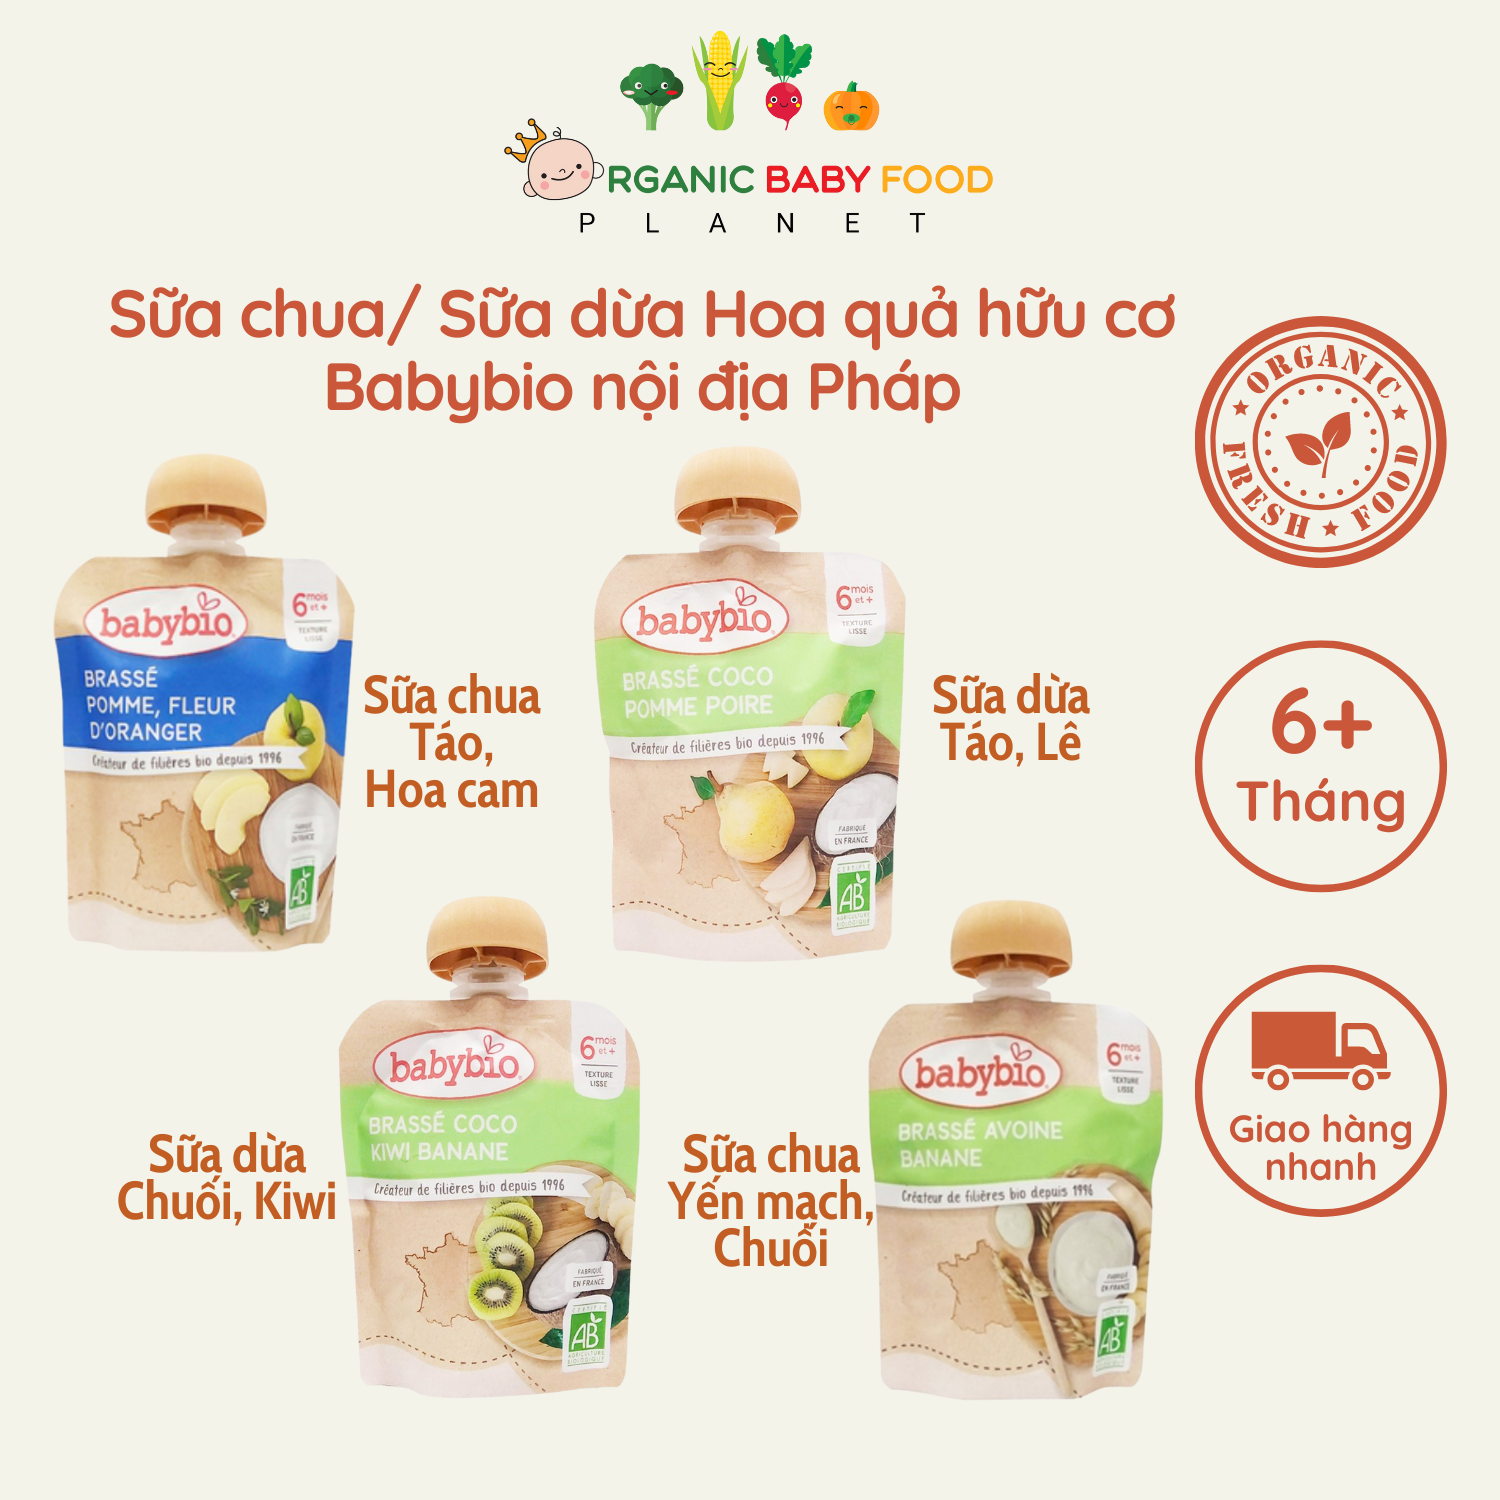 Sữa chua Sữa dừa Hoa quả hữu cơ Babybio cho bé từ 6 tháng túi 85g Hàng nội